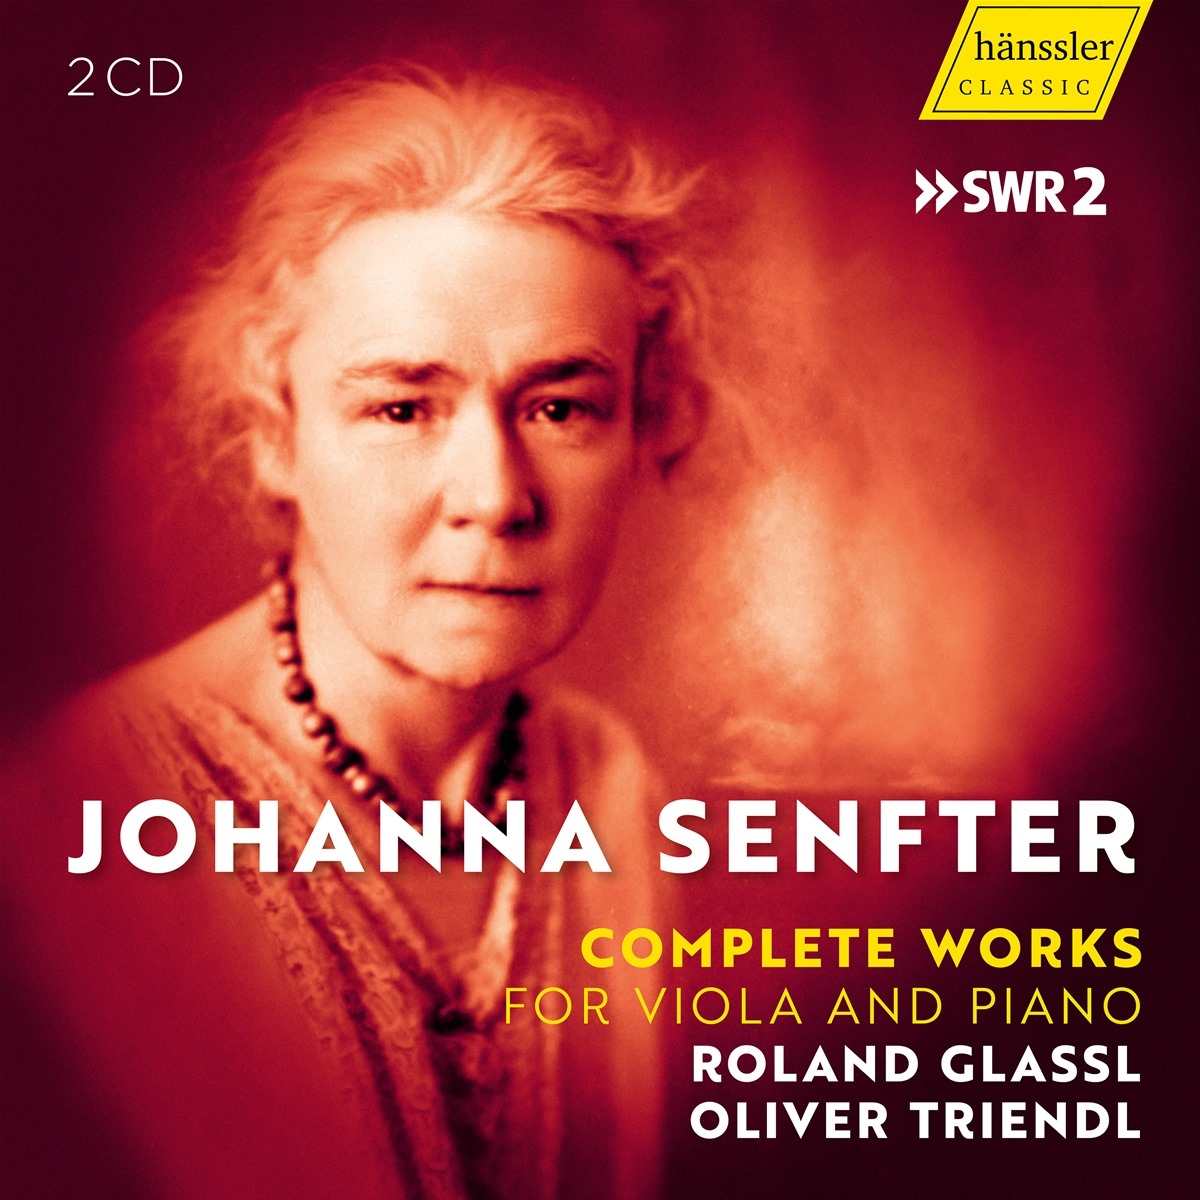 Johanna Senfter Complete Works